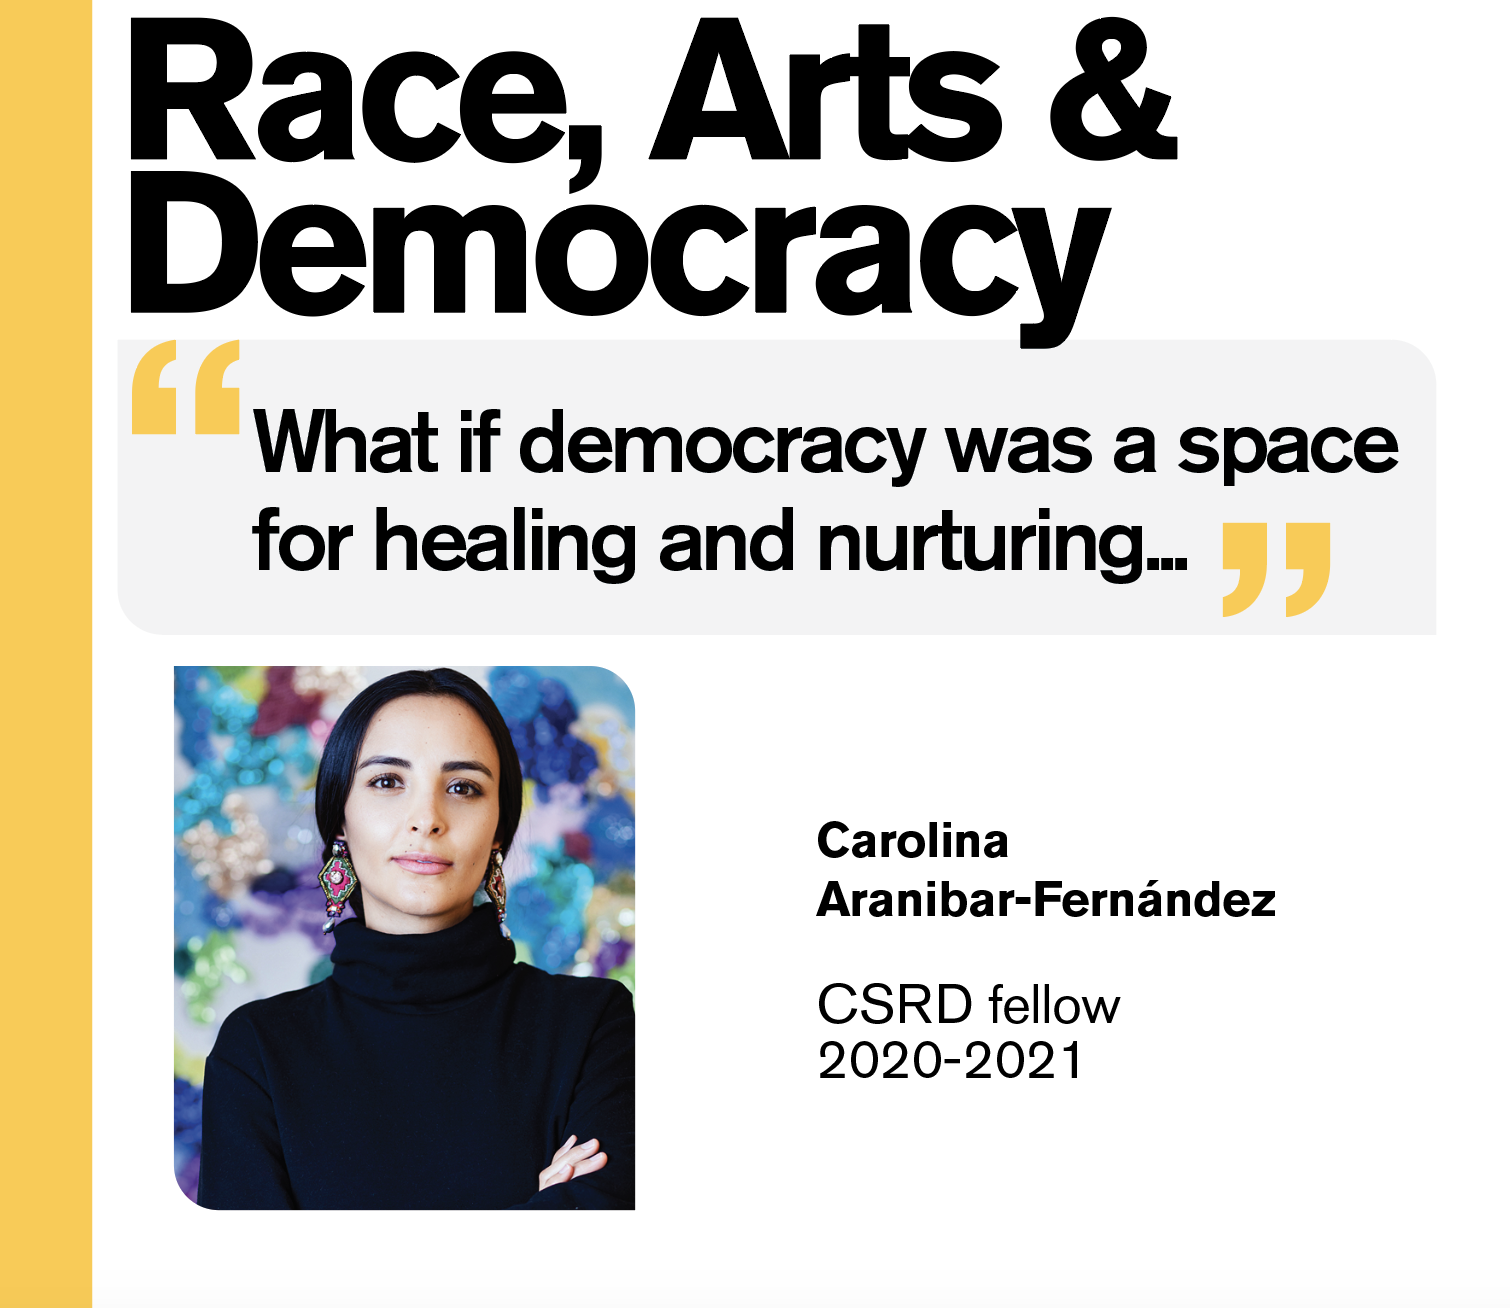 Race, arts and democracy by Carolina Aranibar